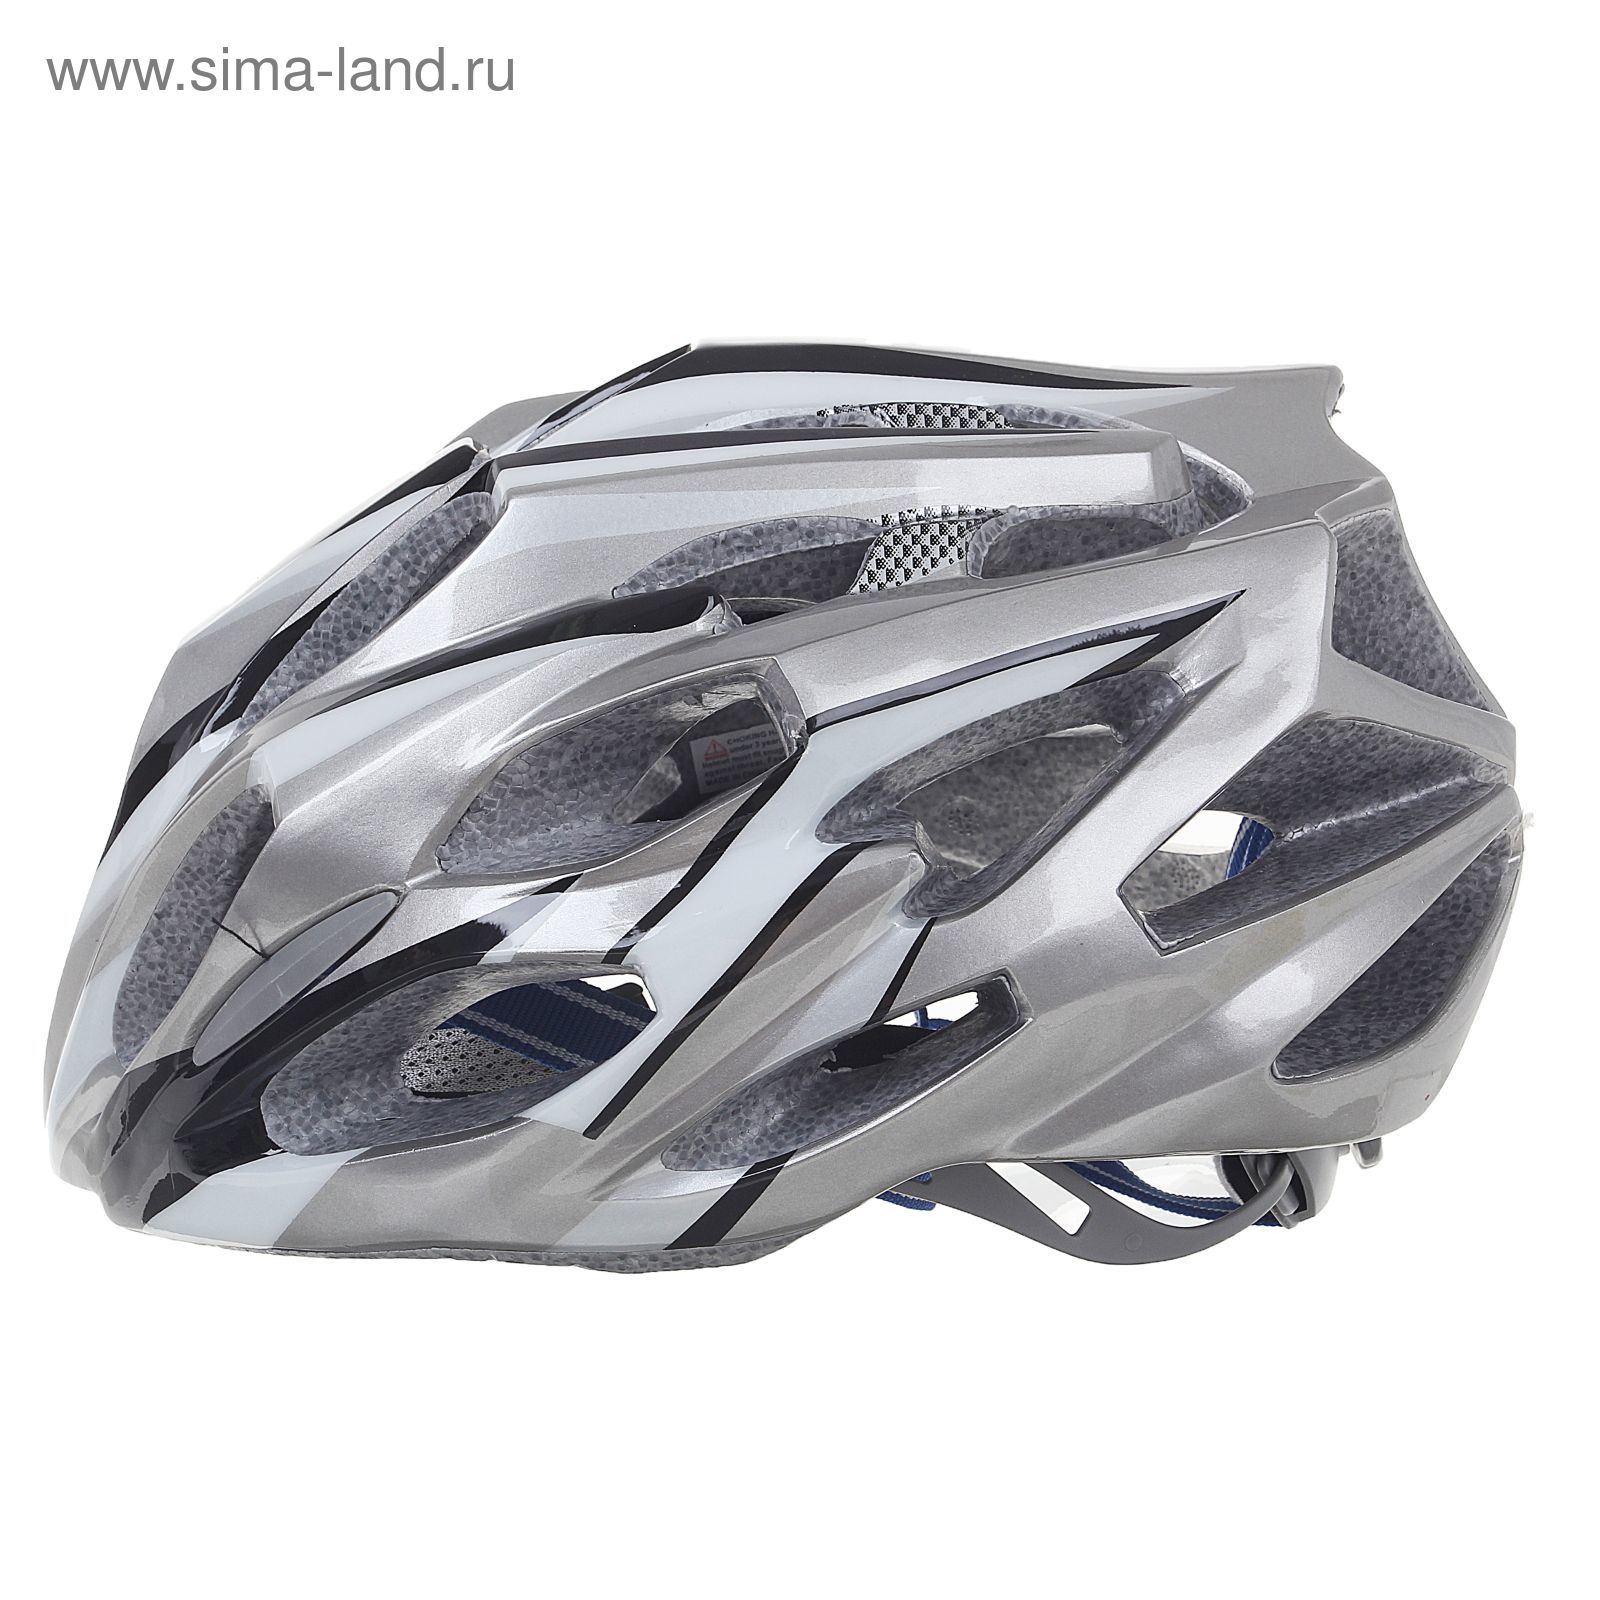 Шлем велосипедиста взрослый ОТ-T28, серый, диаметр 54 см